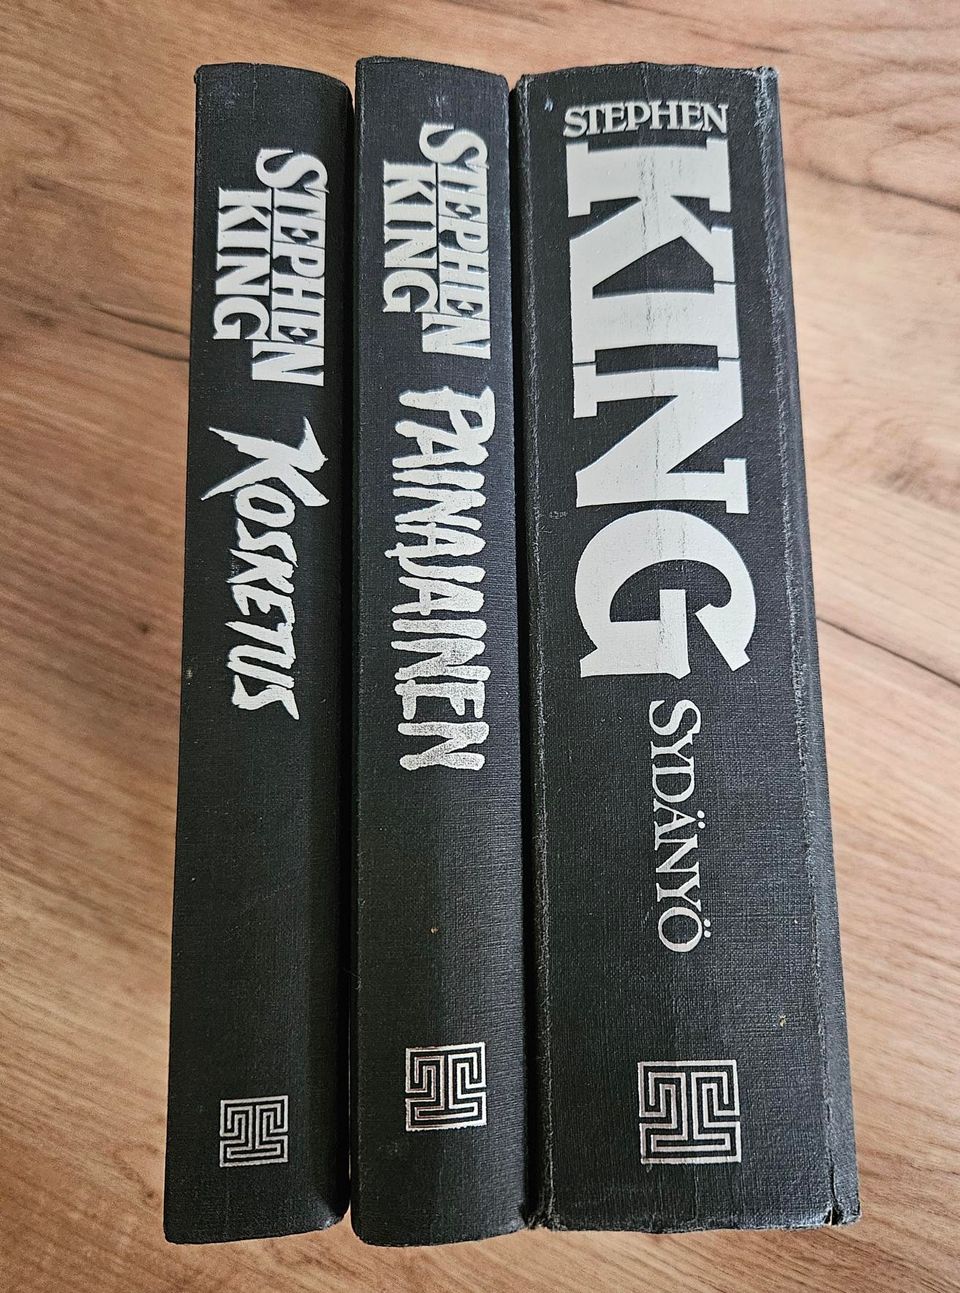 3kpl Stephen King romaaneja: Kosketus, Painajainen ja Sydänyö